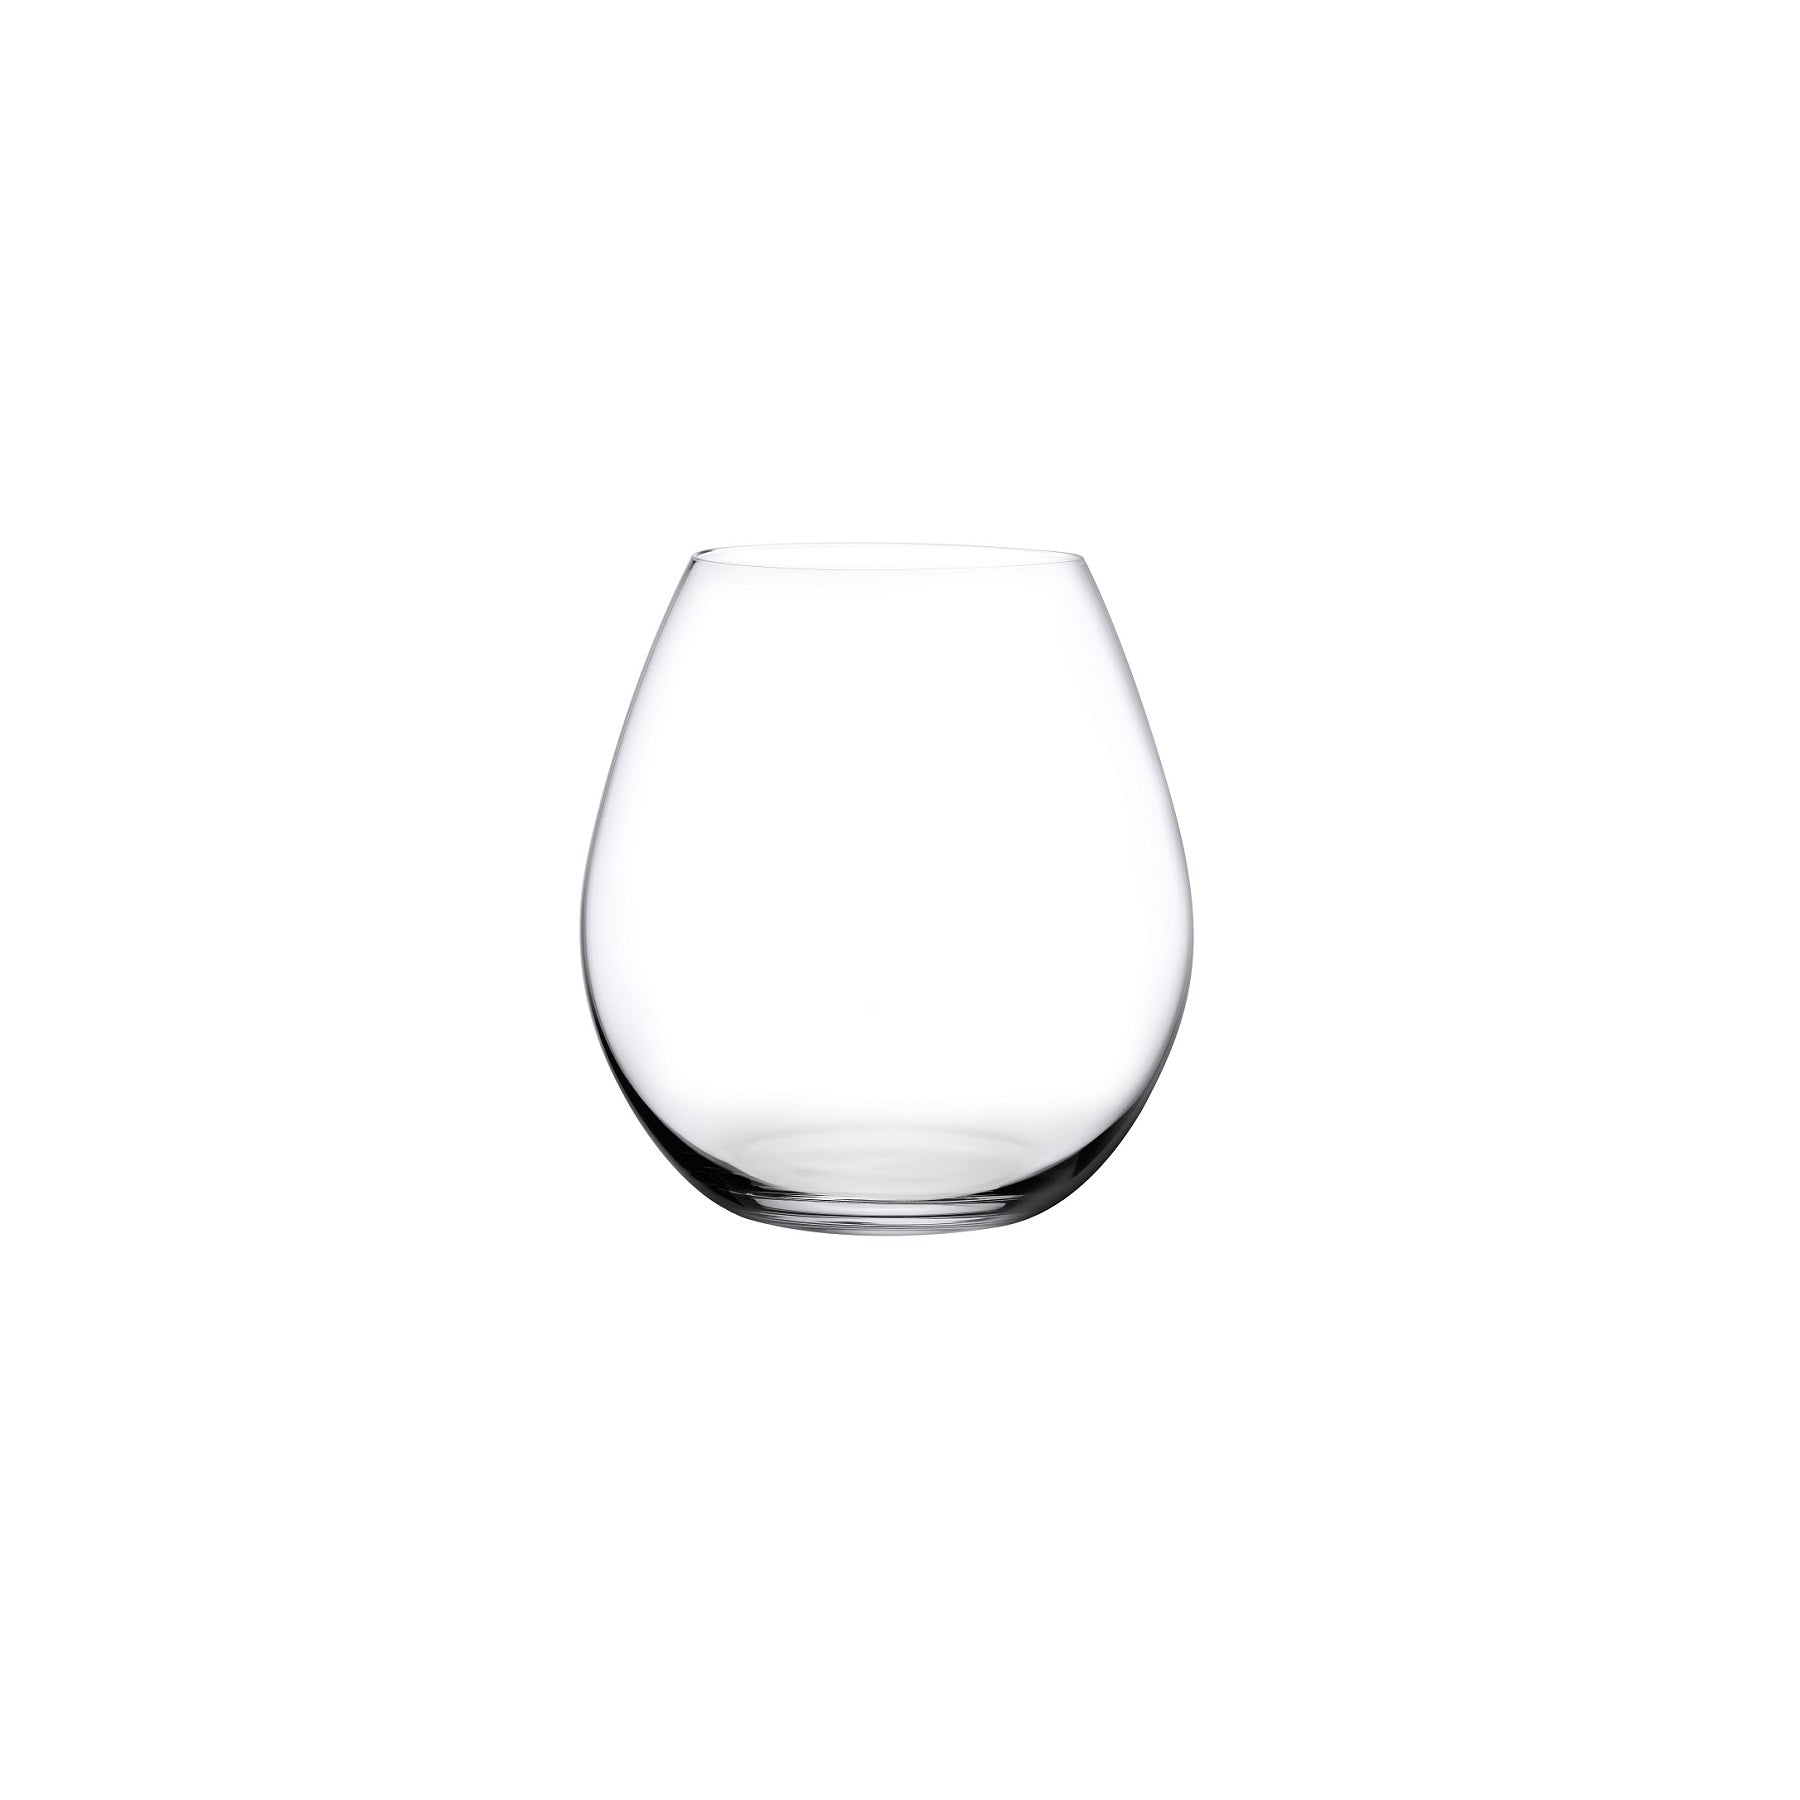 Nude Glass Vintage Grand Bourgogne Crystal Burgundy Wine Glasses - 24.5 oz  - Set of 2